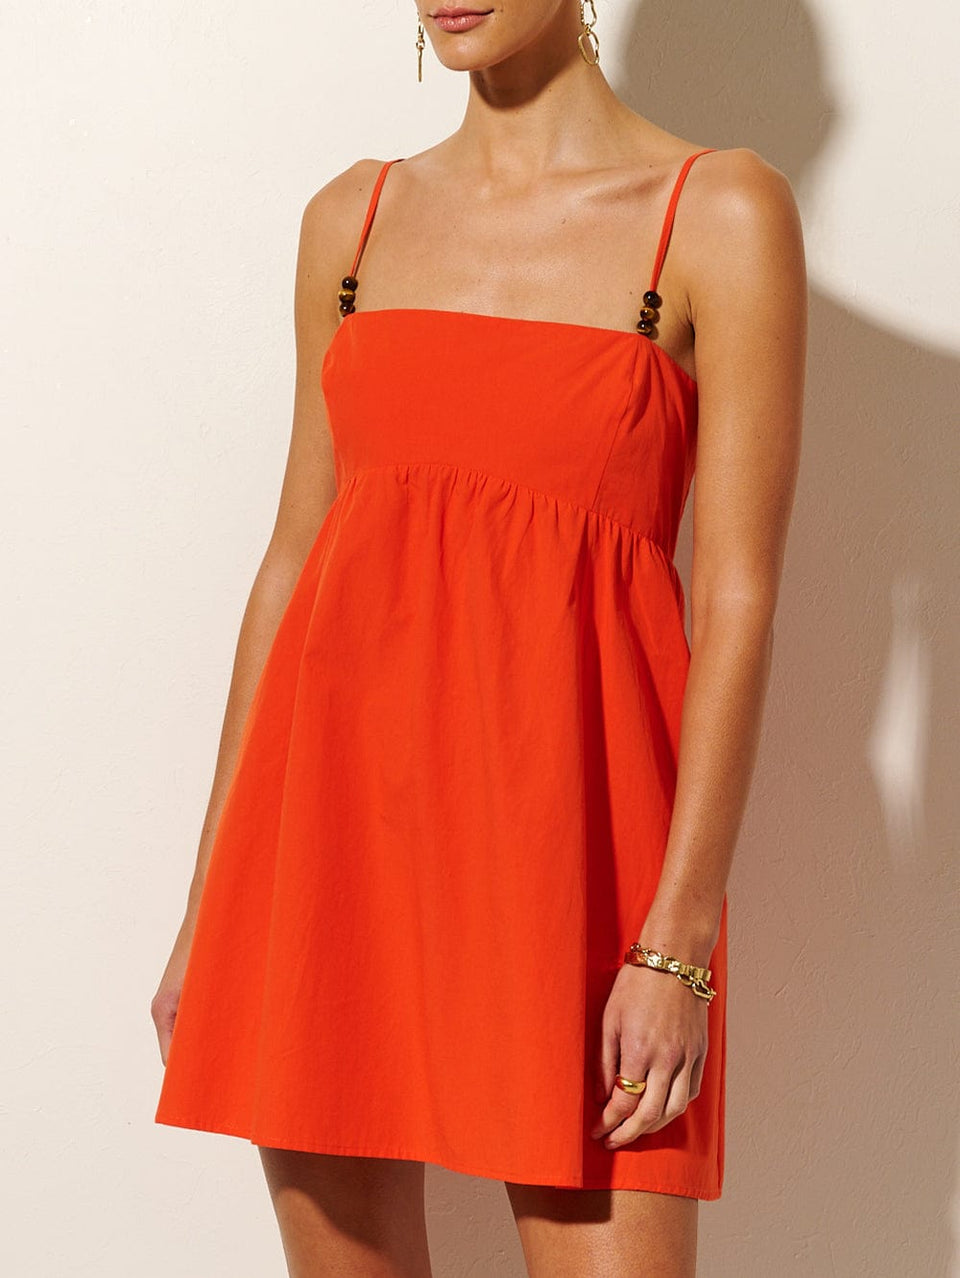 Kennedy Strappy Mini Dress KIVARI | Model wears red mini dress close up